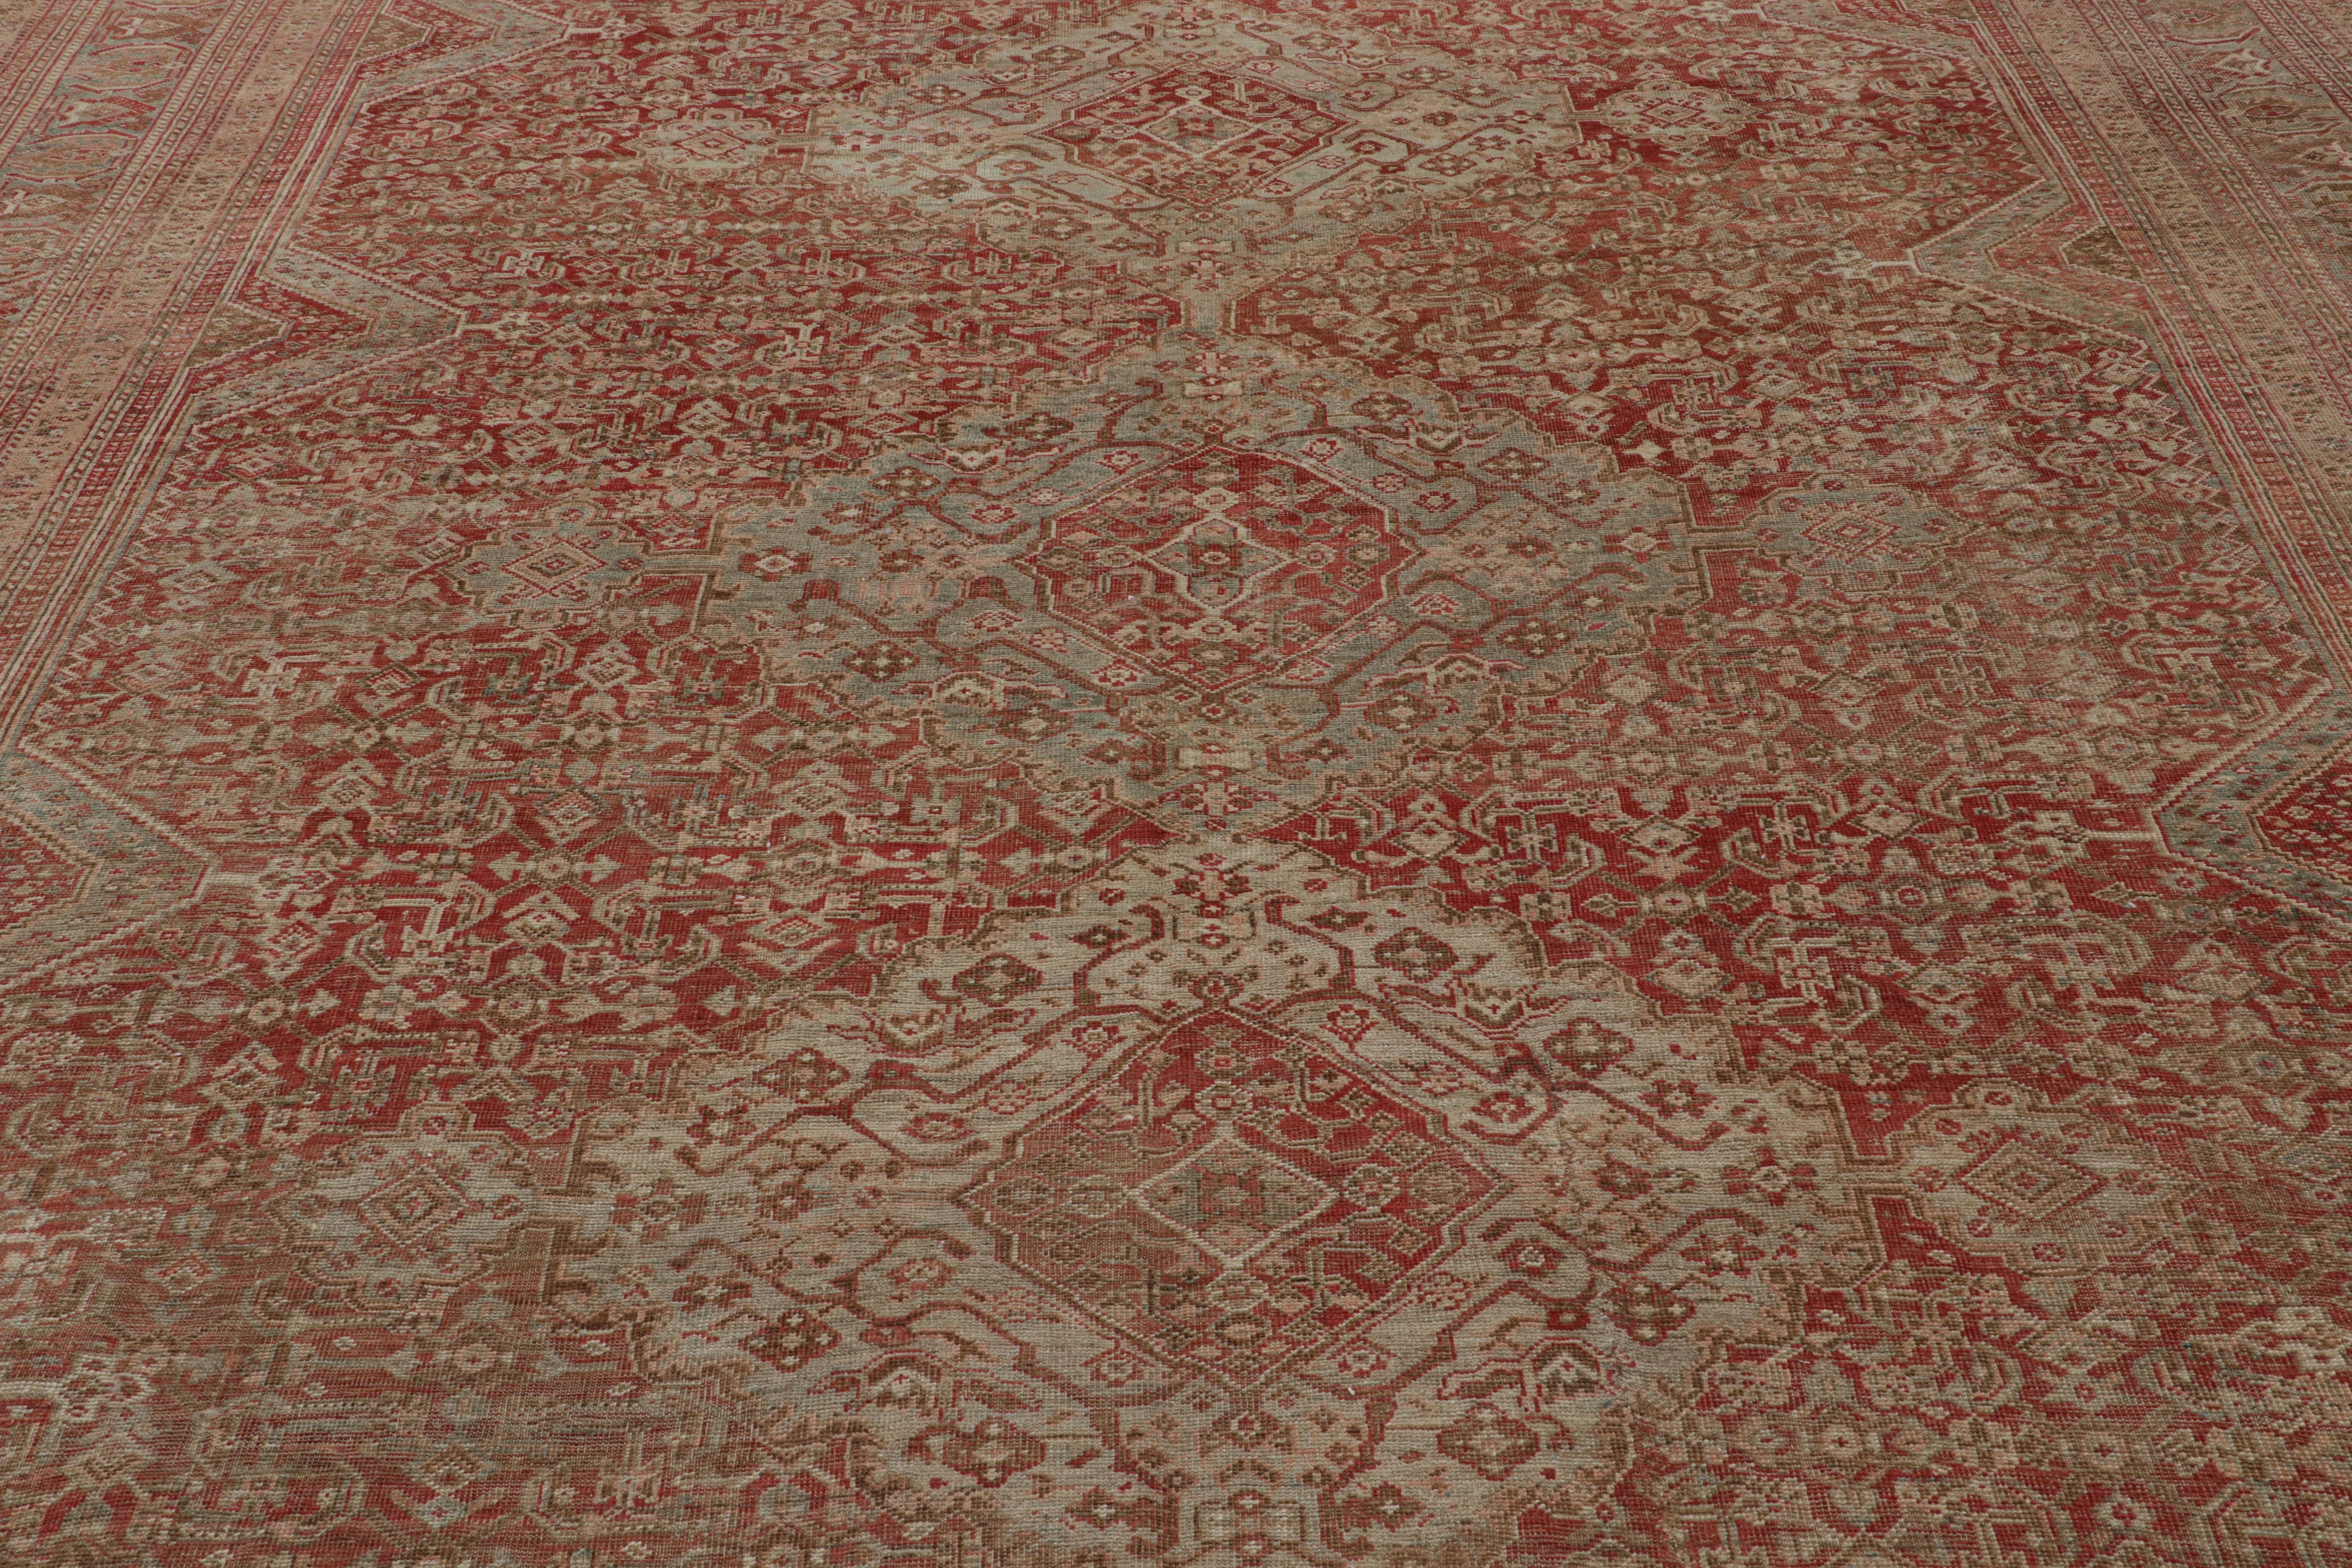 Noué à la main en laine, originaire de Turquie vers 1970-1980, ce tapis 10x16 fait partie d'une nouvelle collection spéciale de jeunes pièces vintage surteintées et lavées à l'ancienne qui s'inspirent d'une variété de styles de tapis tribaux du